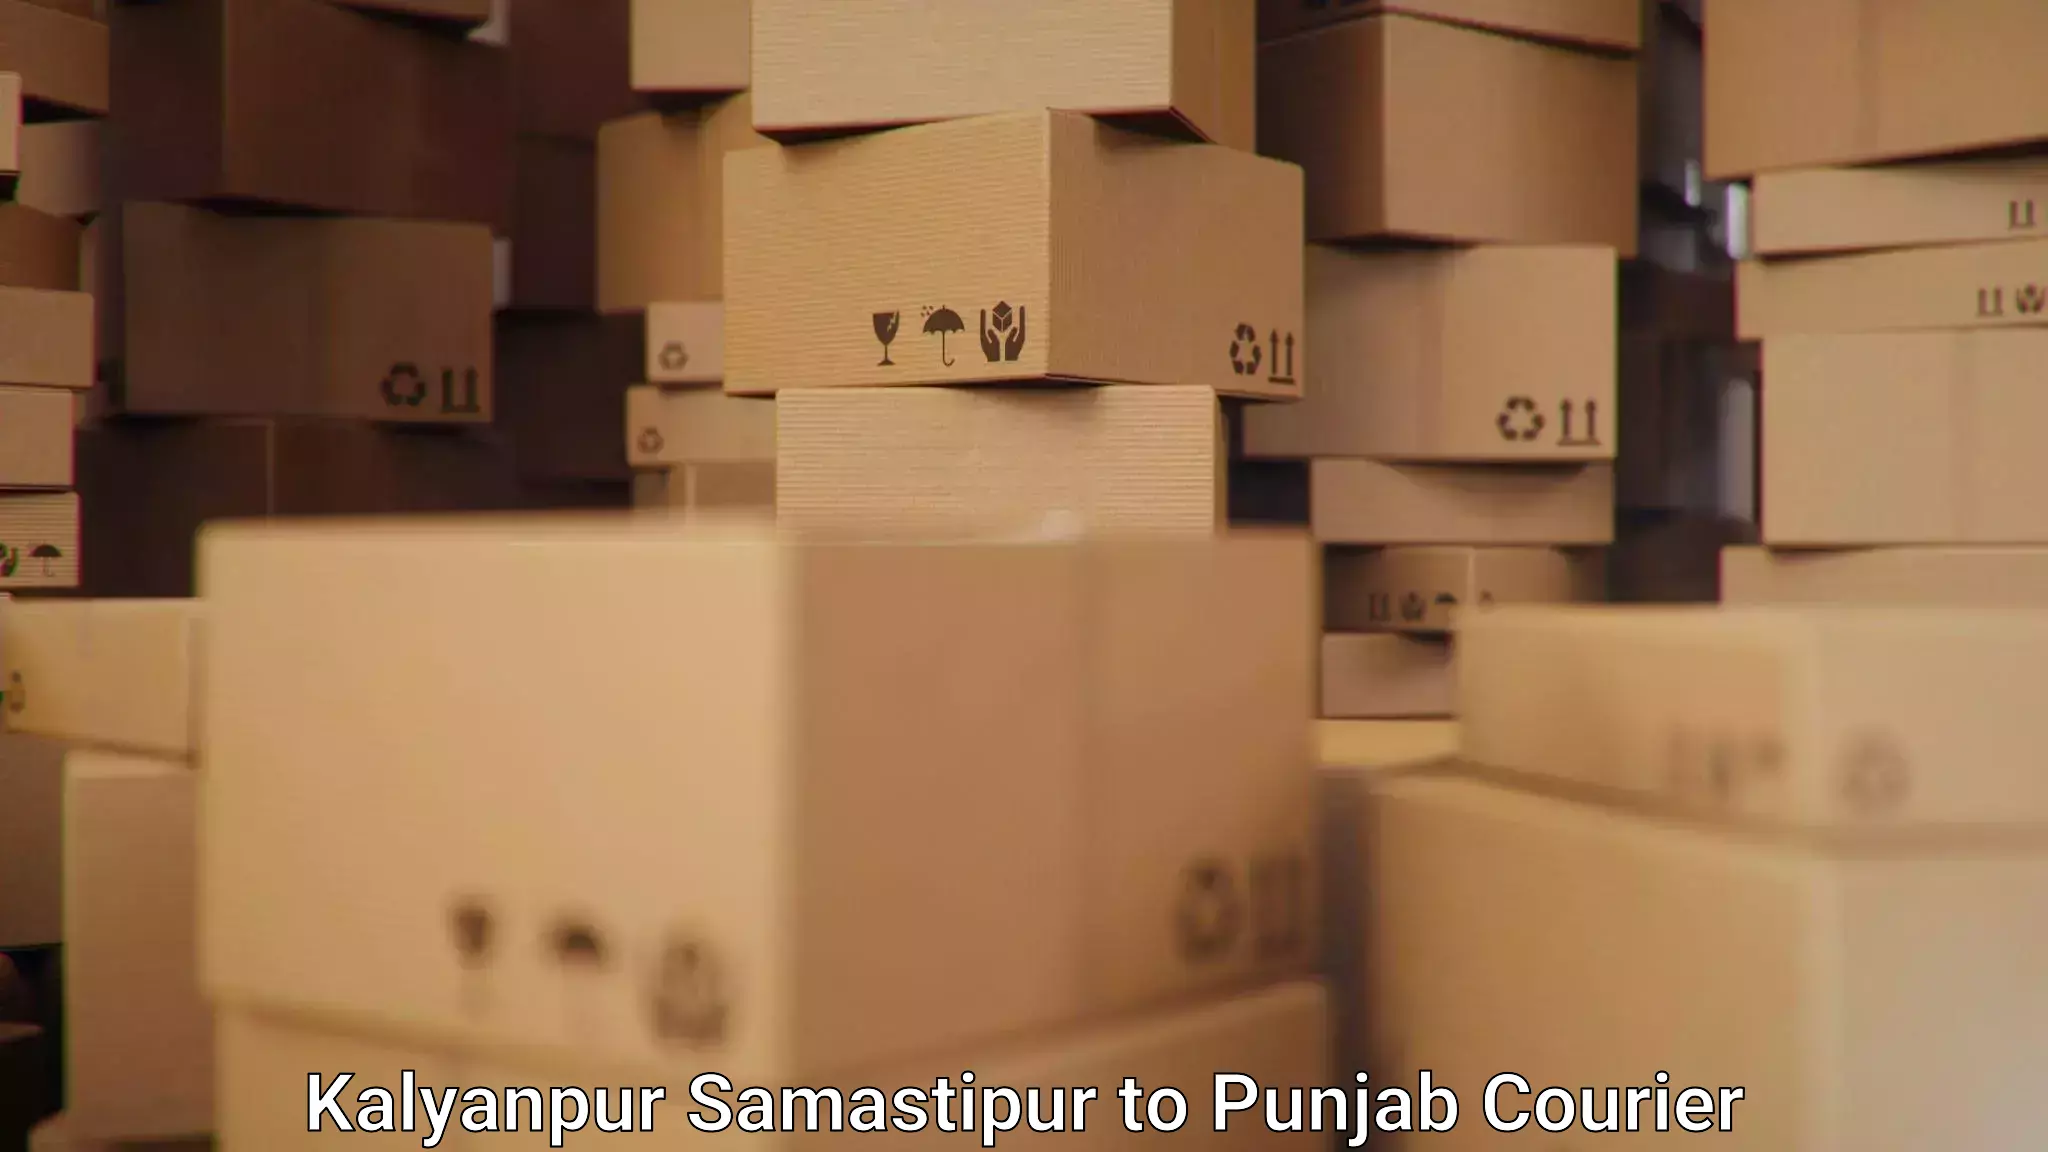 Versatile courier options in Kalyanpur Samastipur to Dera Bassi